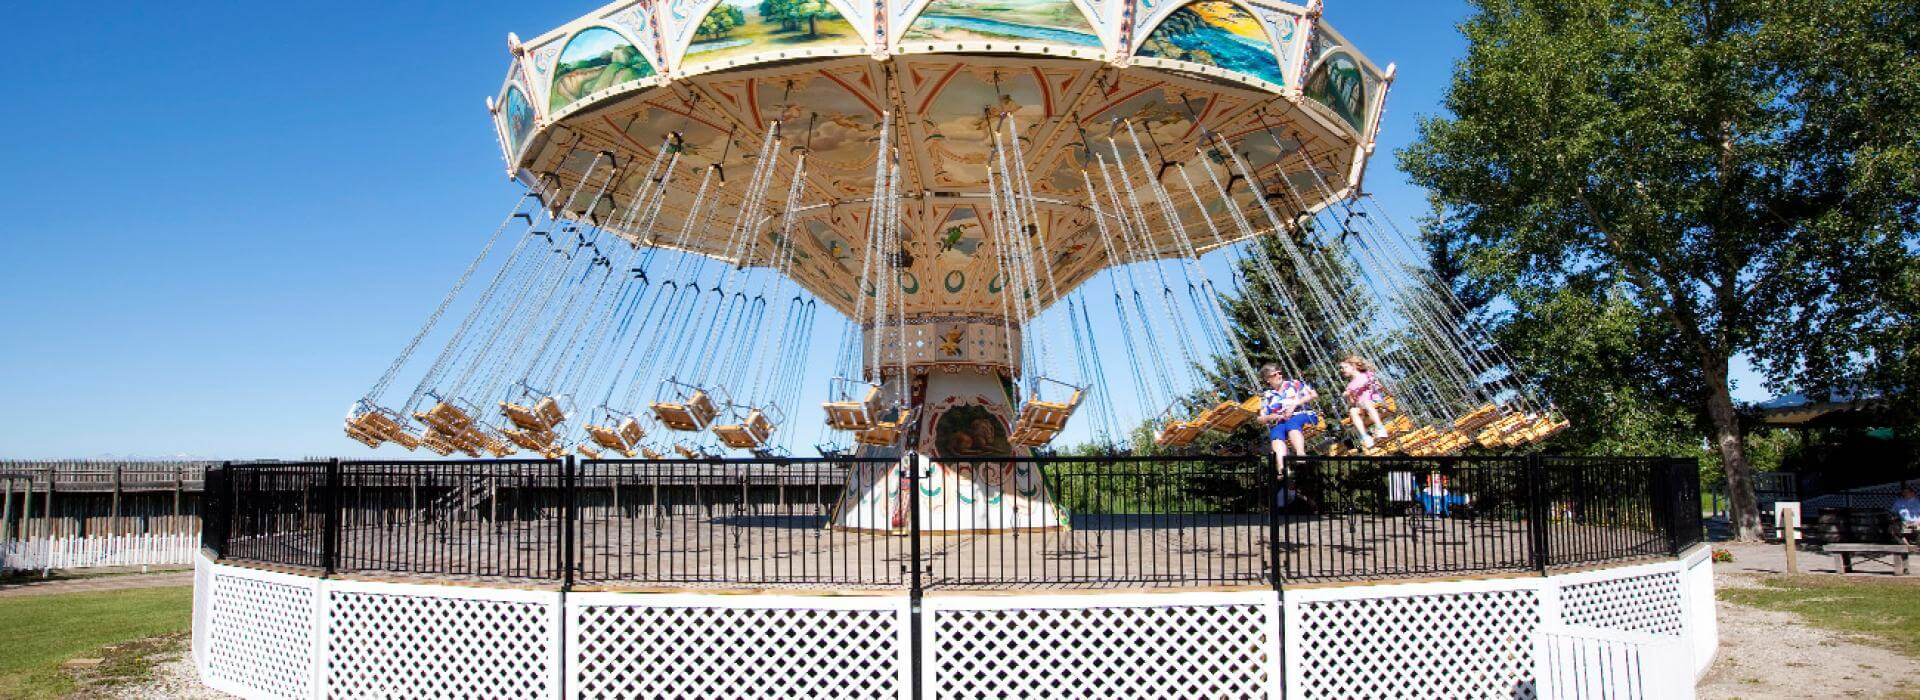 amusement park swings in motion